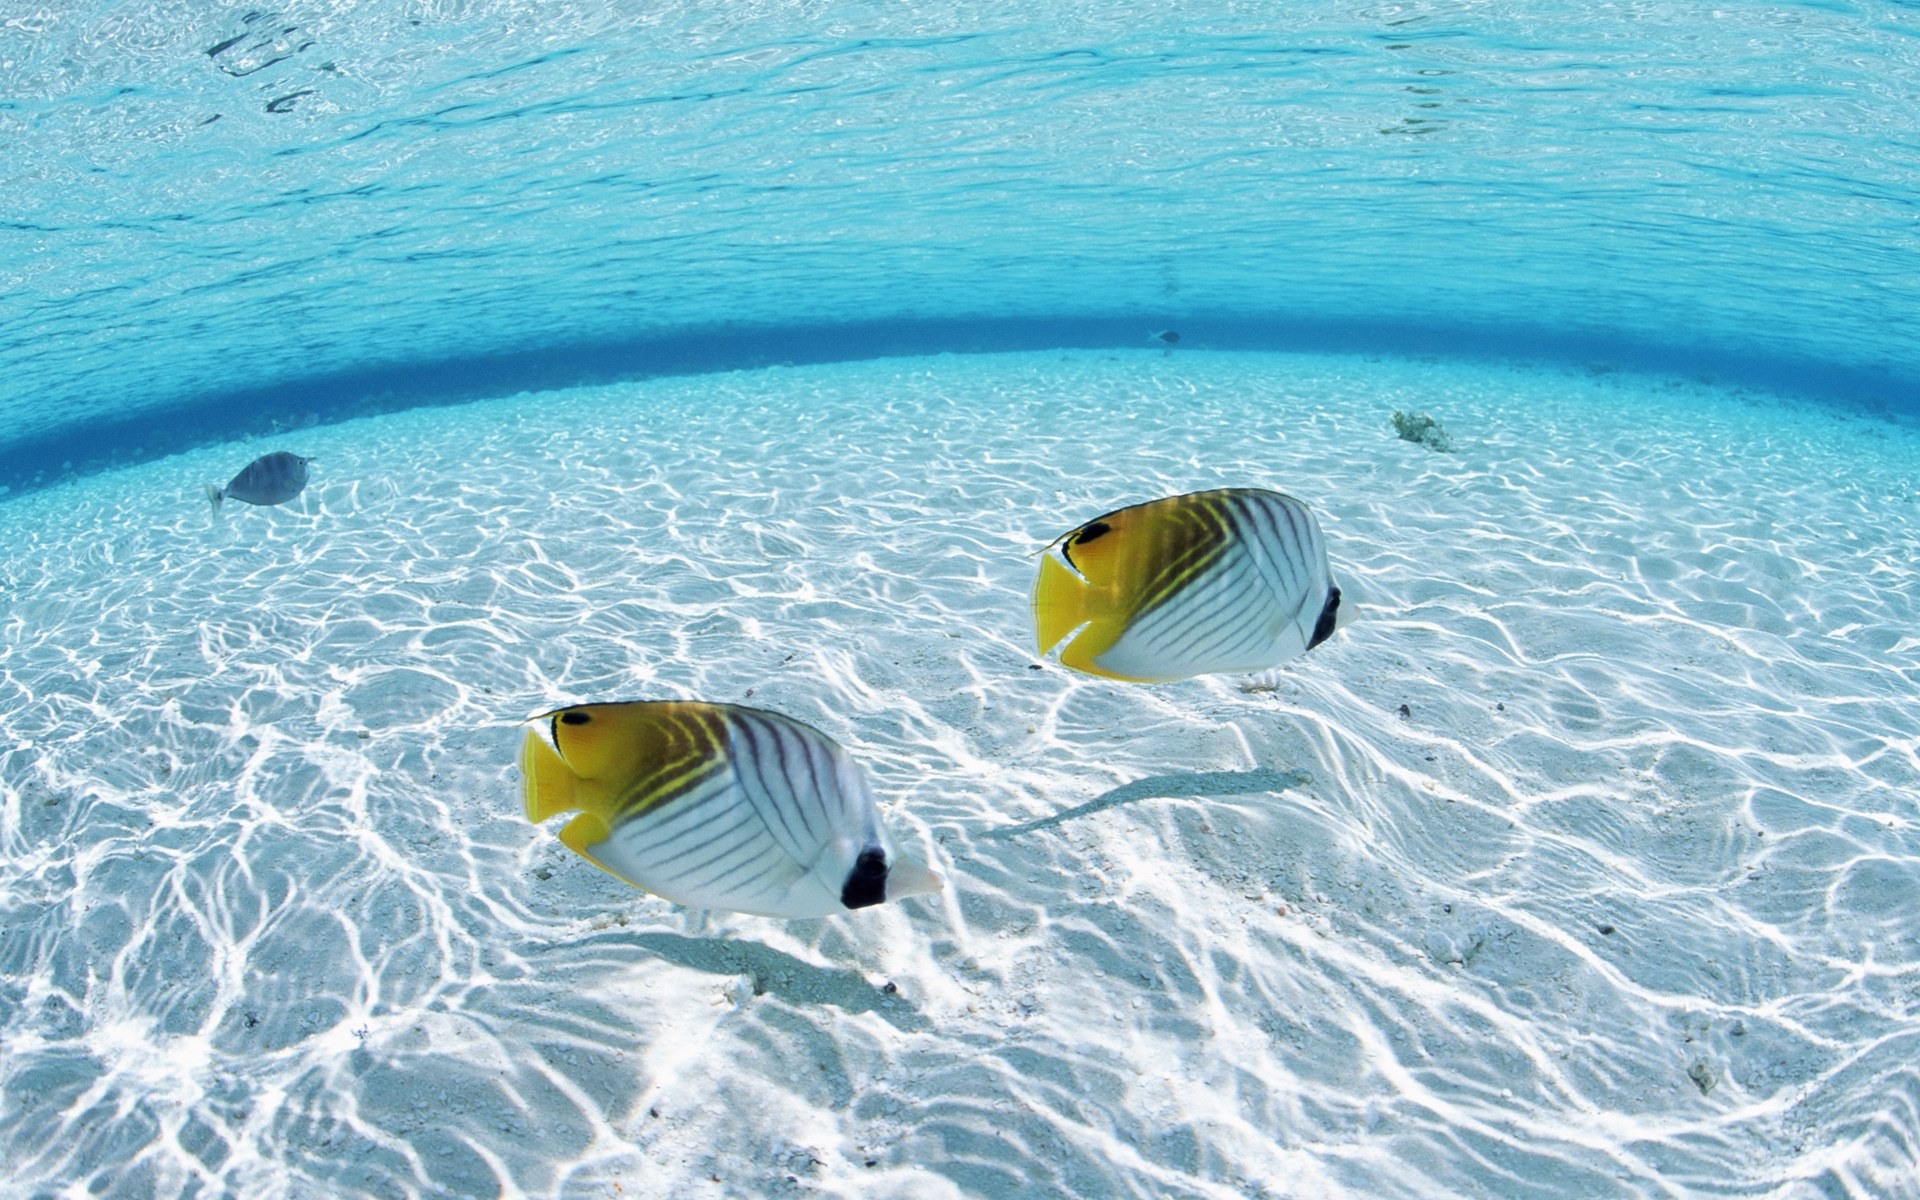  the ocean desktop wallpaper download fish in the ocean wallpaper in hd 1920x1200